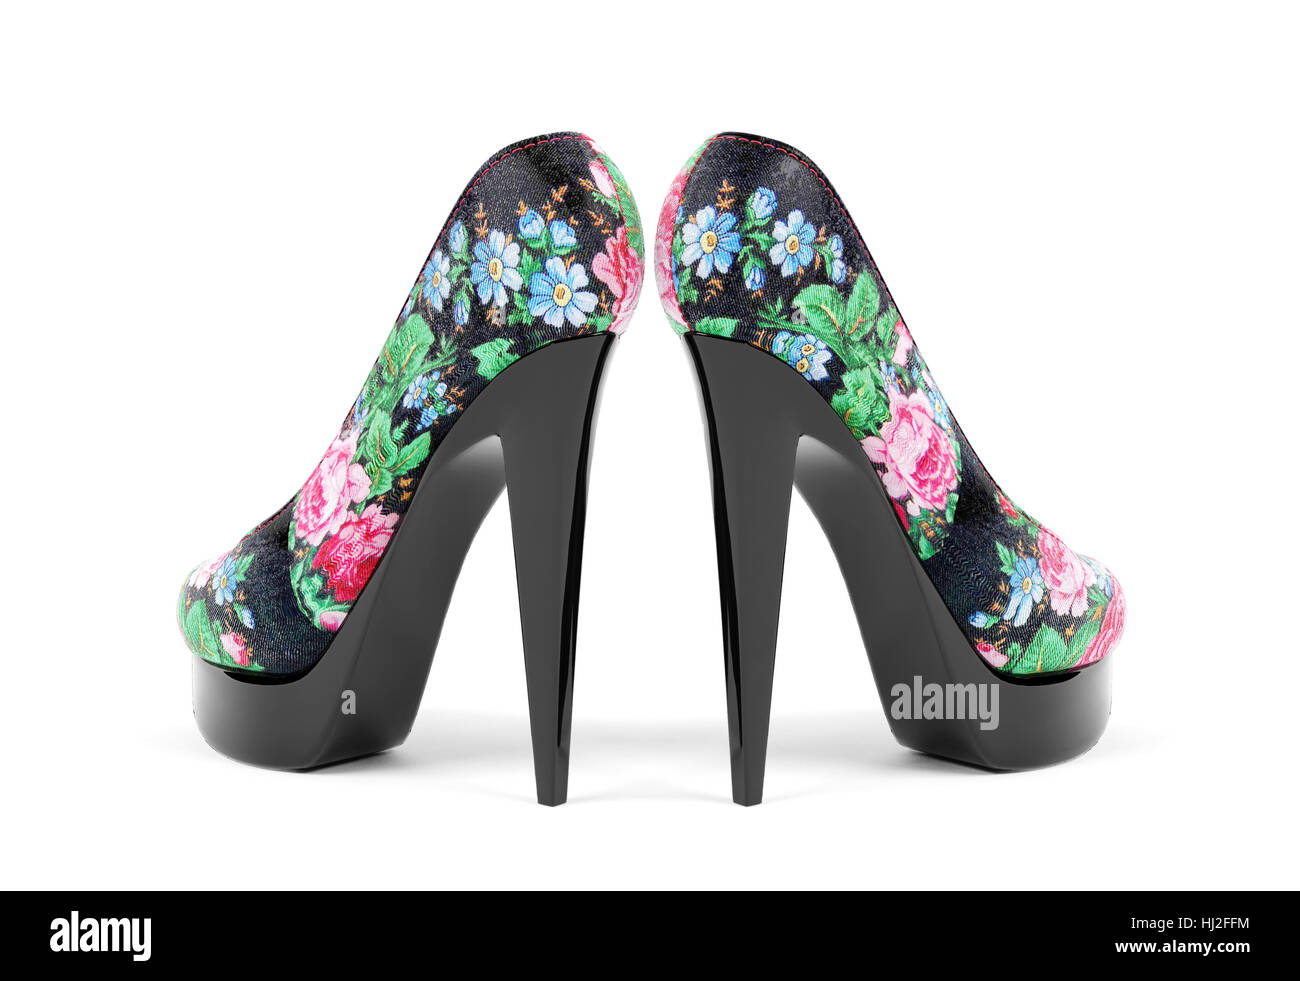 Weibliche High Heels mit Blumen Muster auf weißem Hintergrund,  Vorderansicht Stockfotografie - Alamy